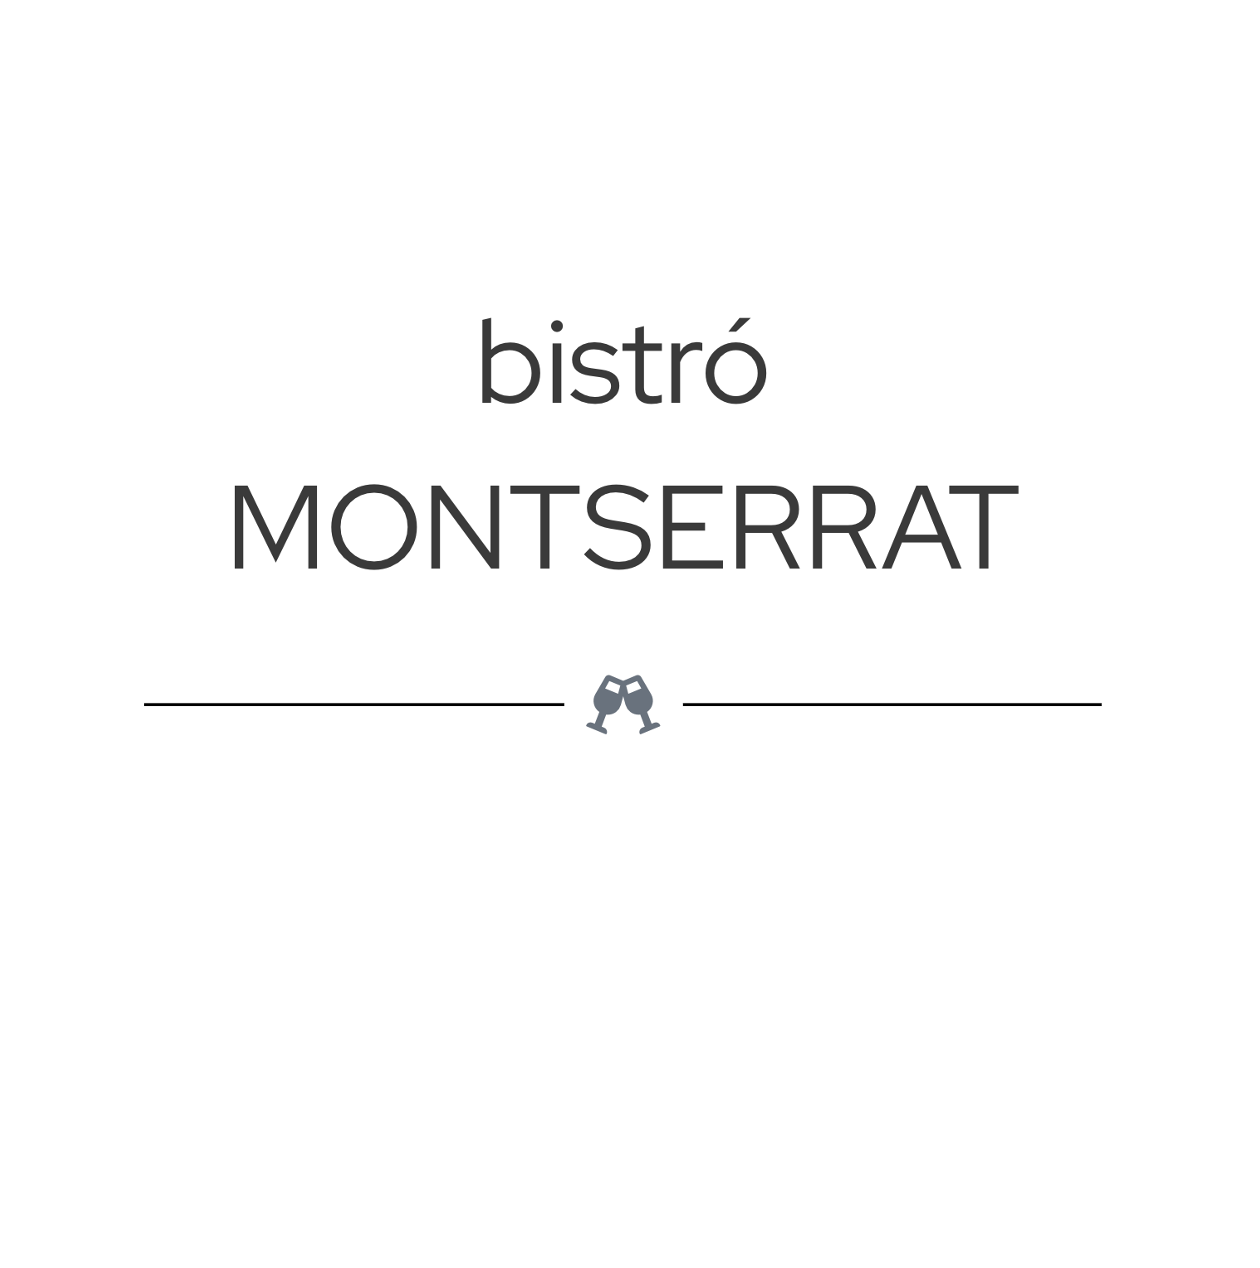 Bistro Montserrat